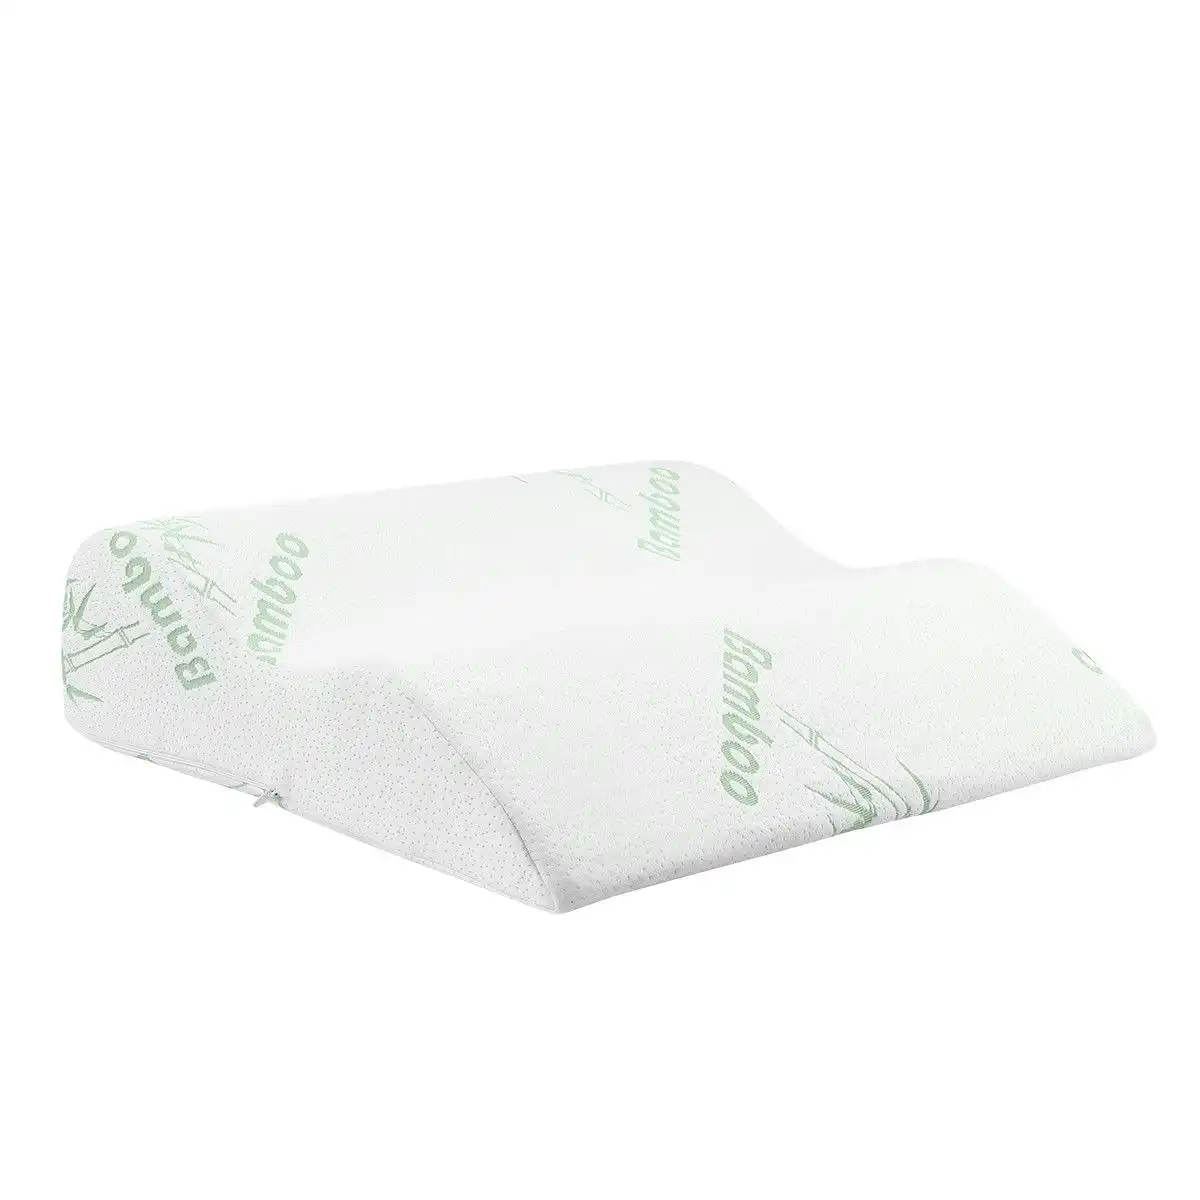 Ausway Pillow Foam Pillow Leg Raiser Support Bamboo Cover Elevation Bed Luxdream